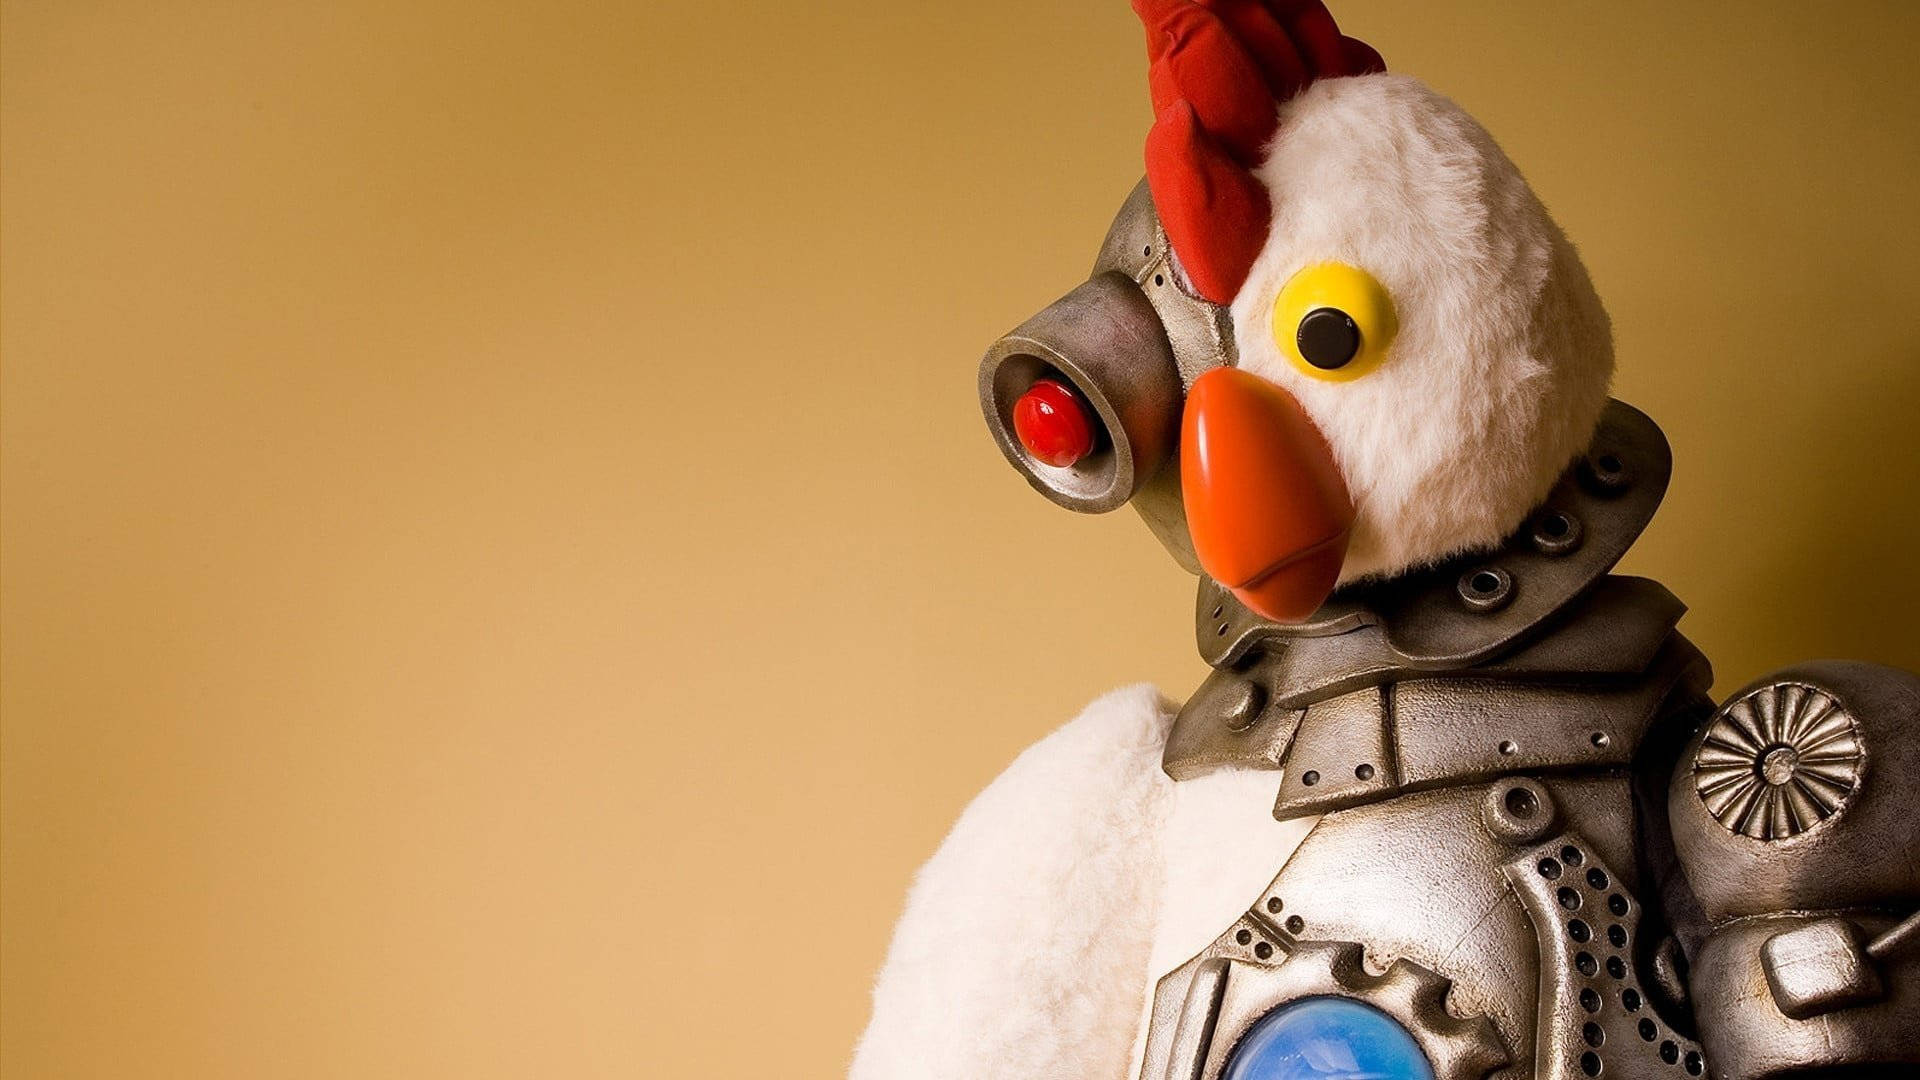 Robot Chicken Toy Wallpaper